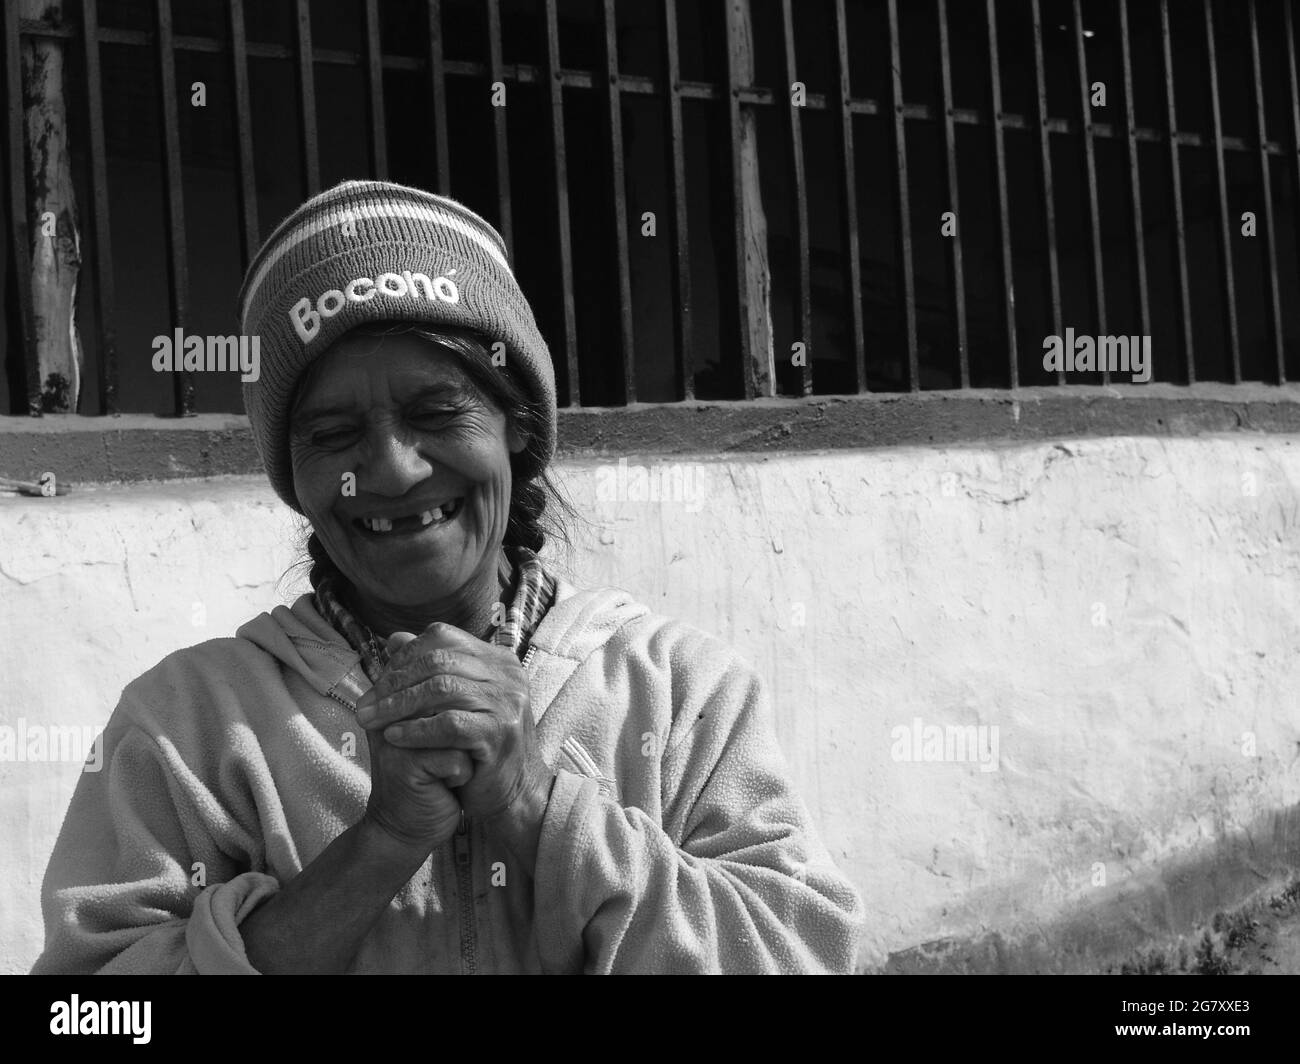 TRUJILLO, VENEZUELA - Apr 05, 2010: A friendly smile from a lady living in Trujillo, Venezuela Stock Photo